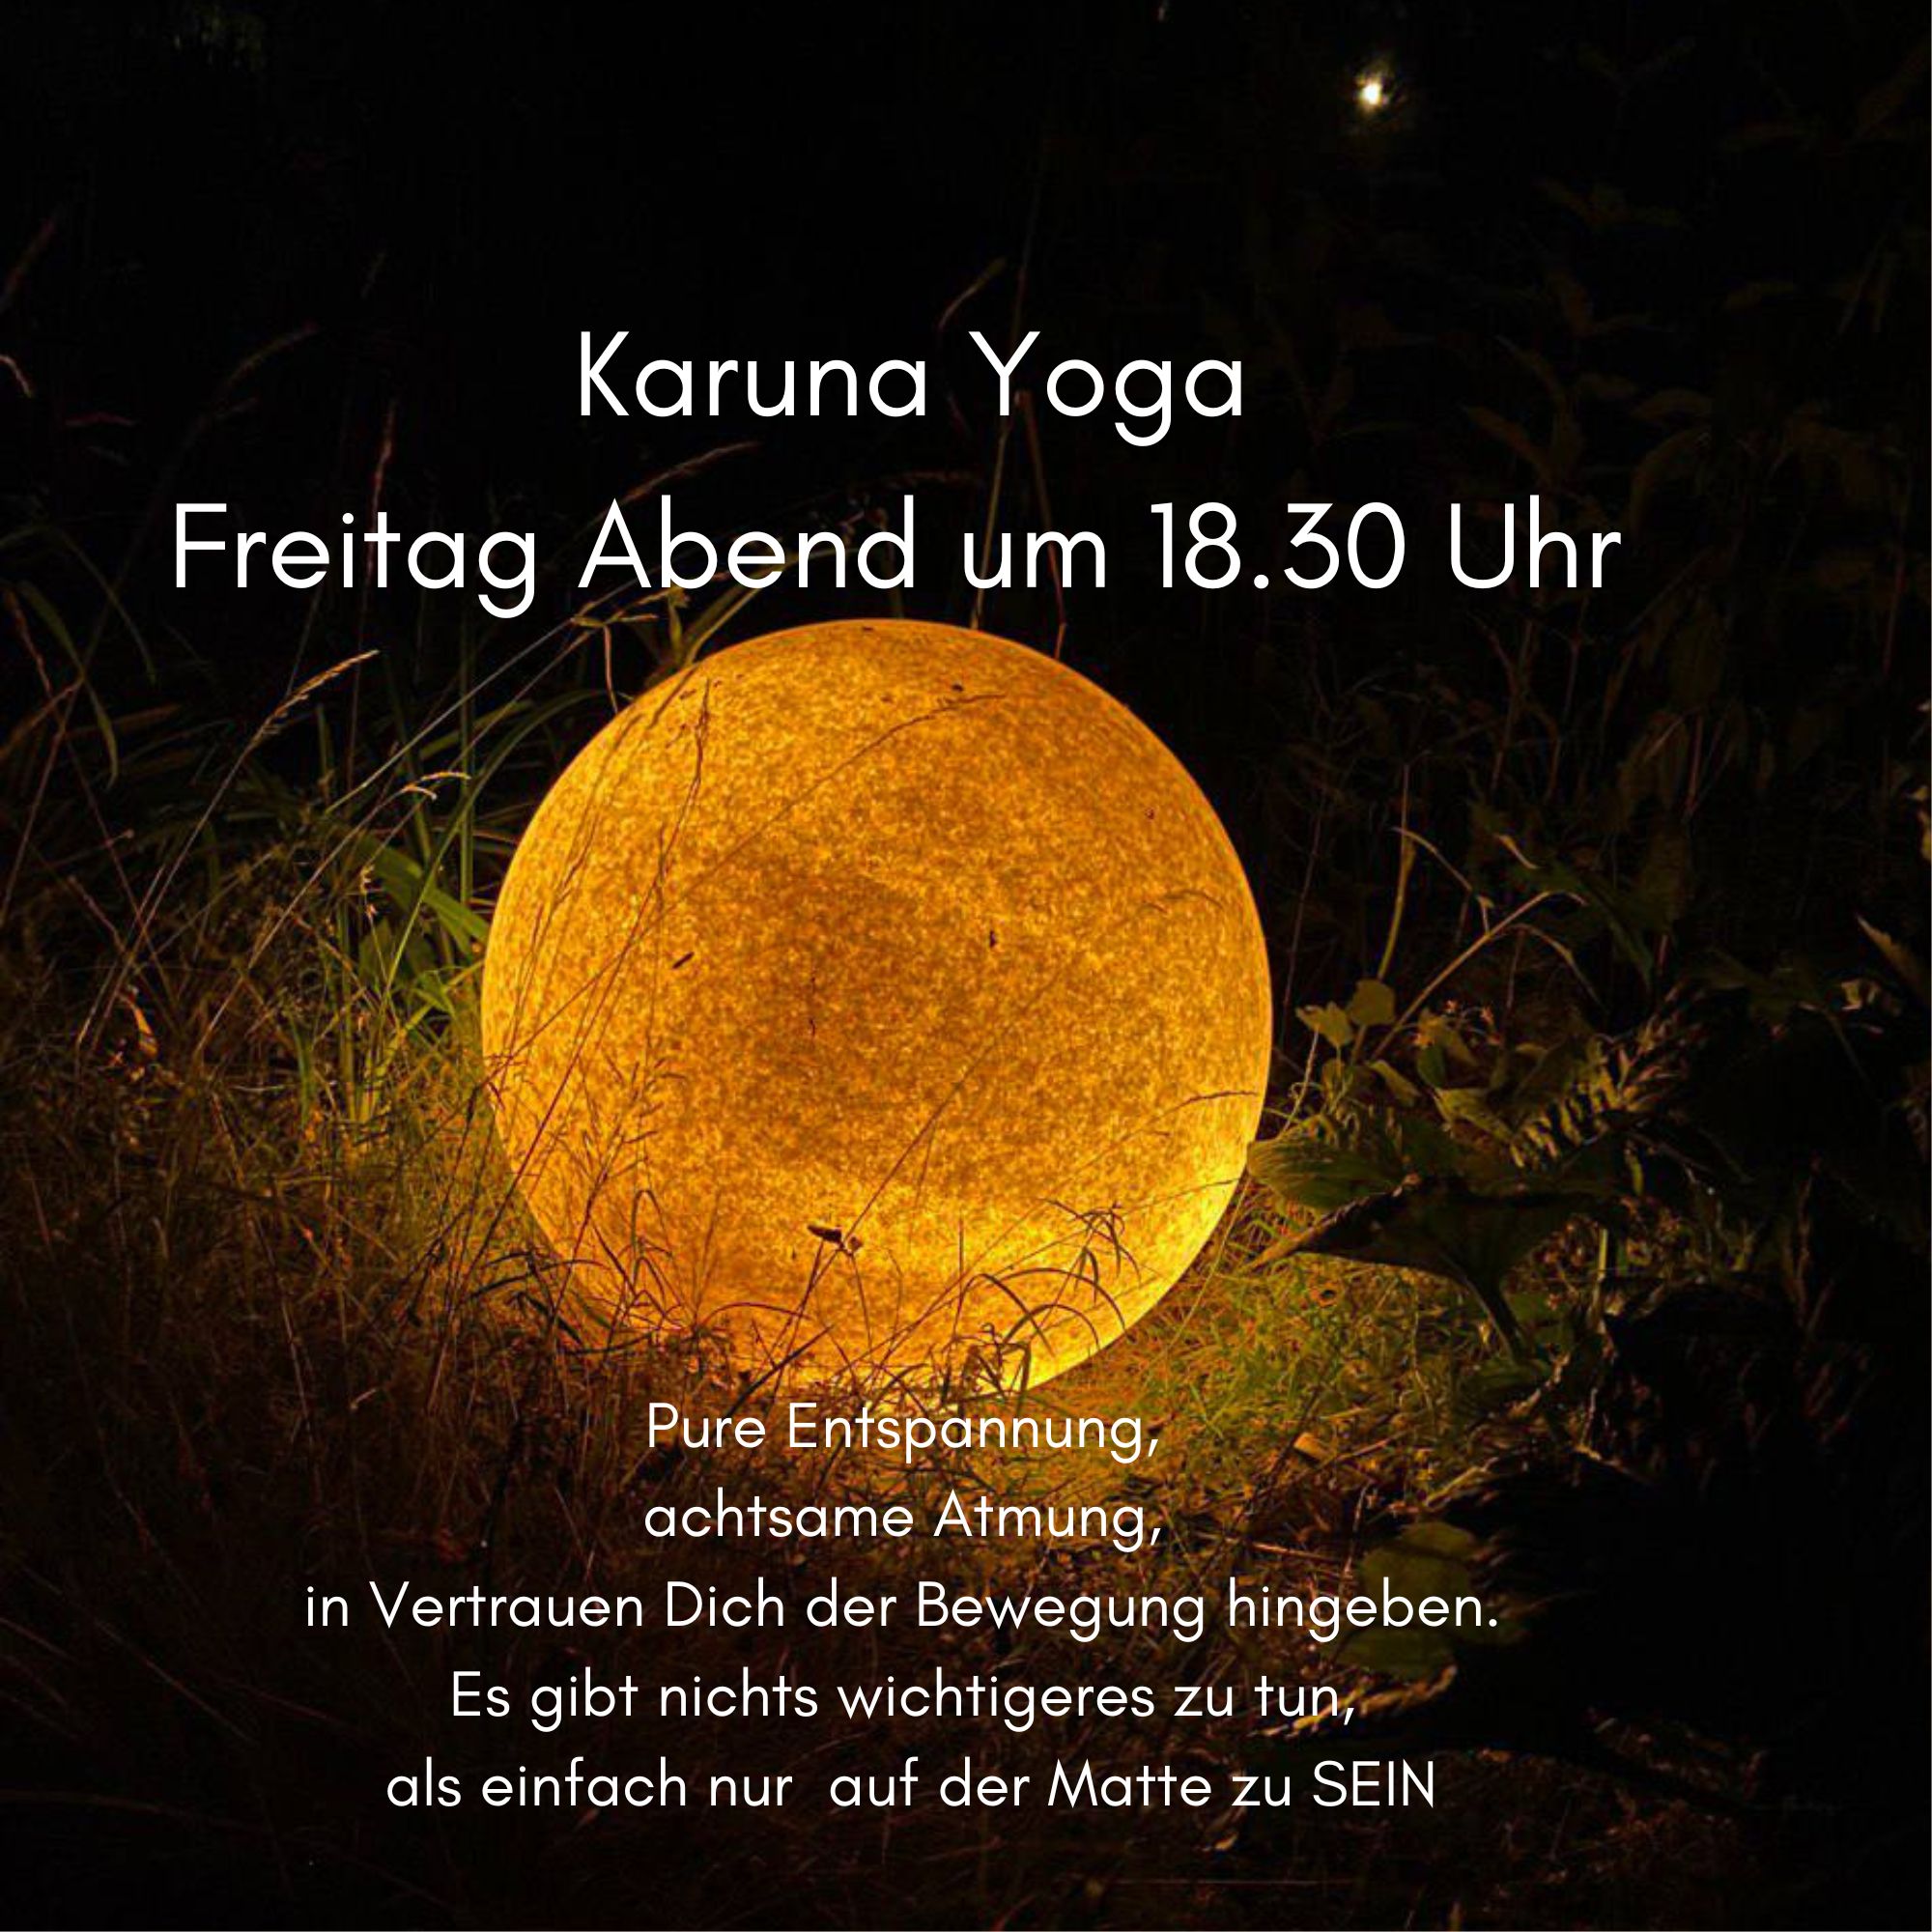 Karuna Yoga am Freitag Abend 2.11 um 18.30, Samstag 3.11 um 9 Uhr findet keine Yoga Stunde statt